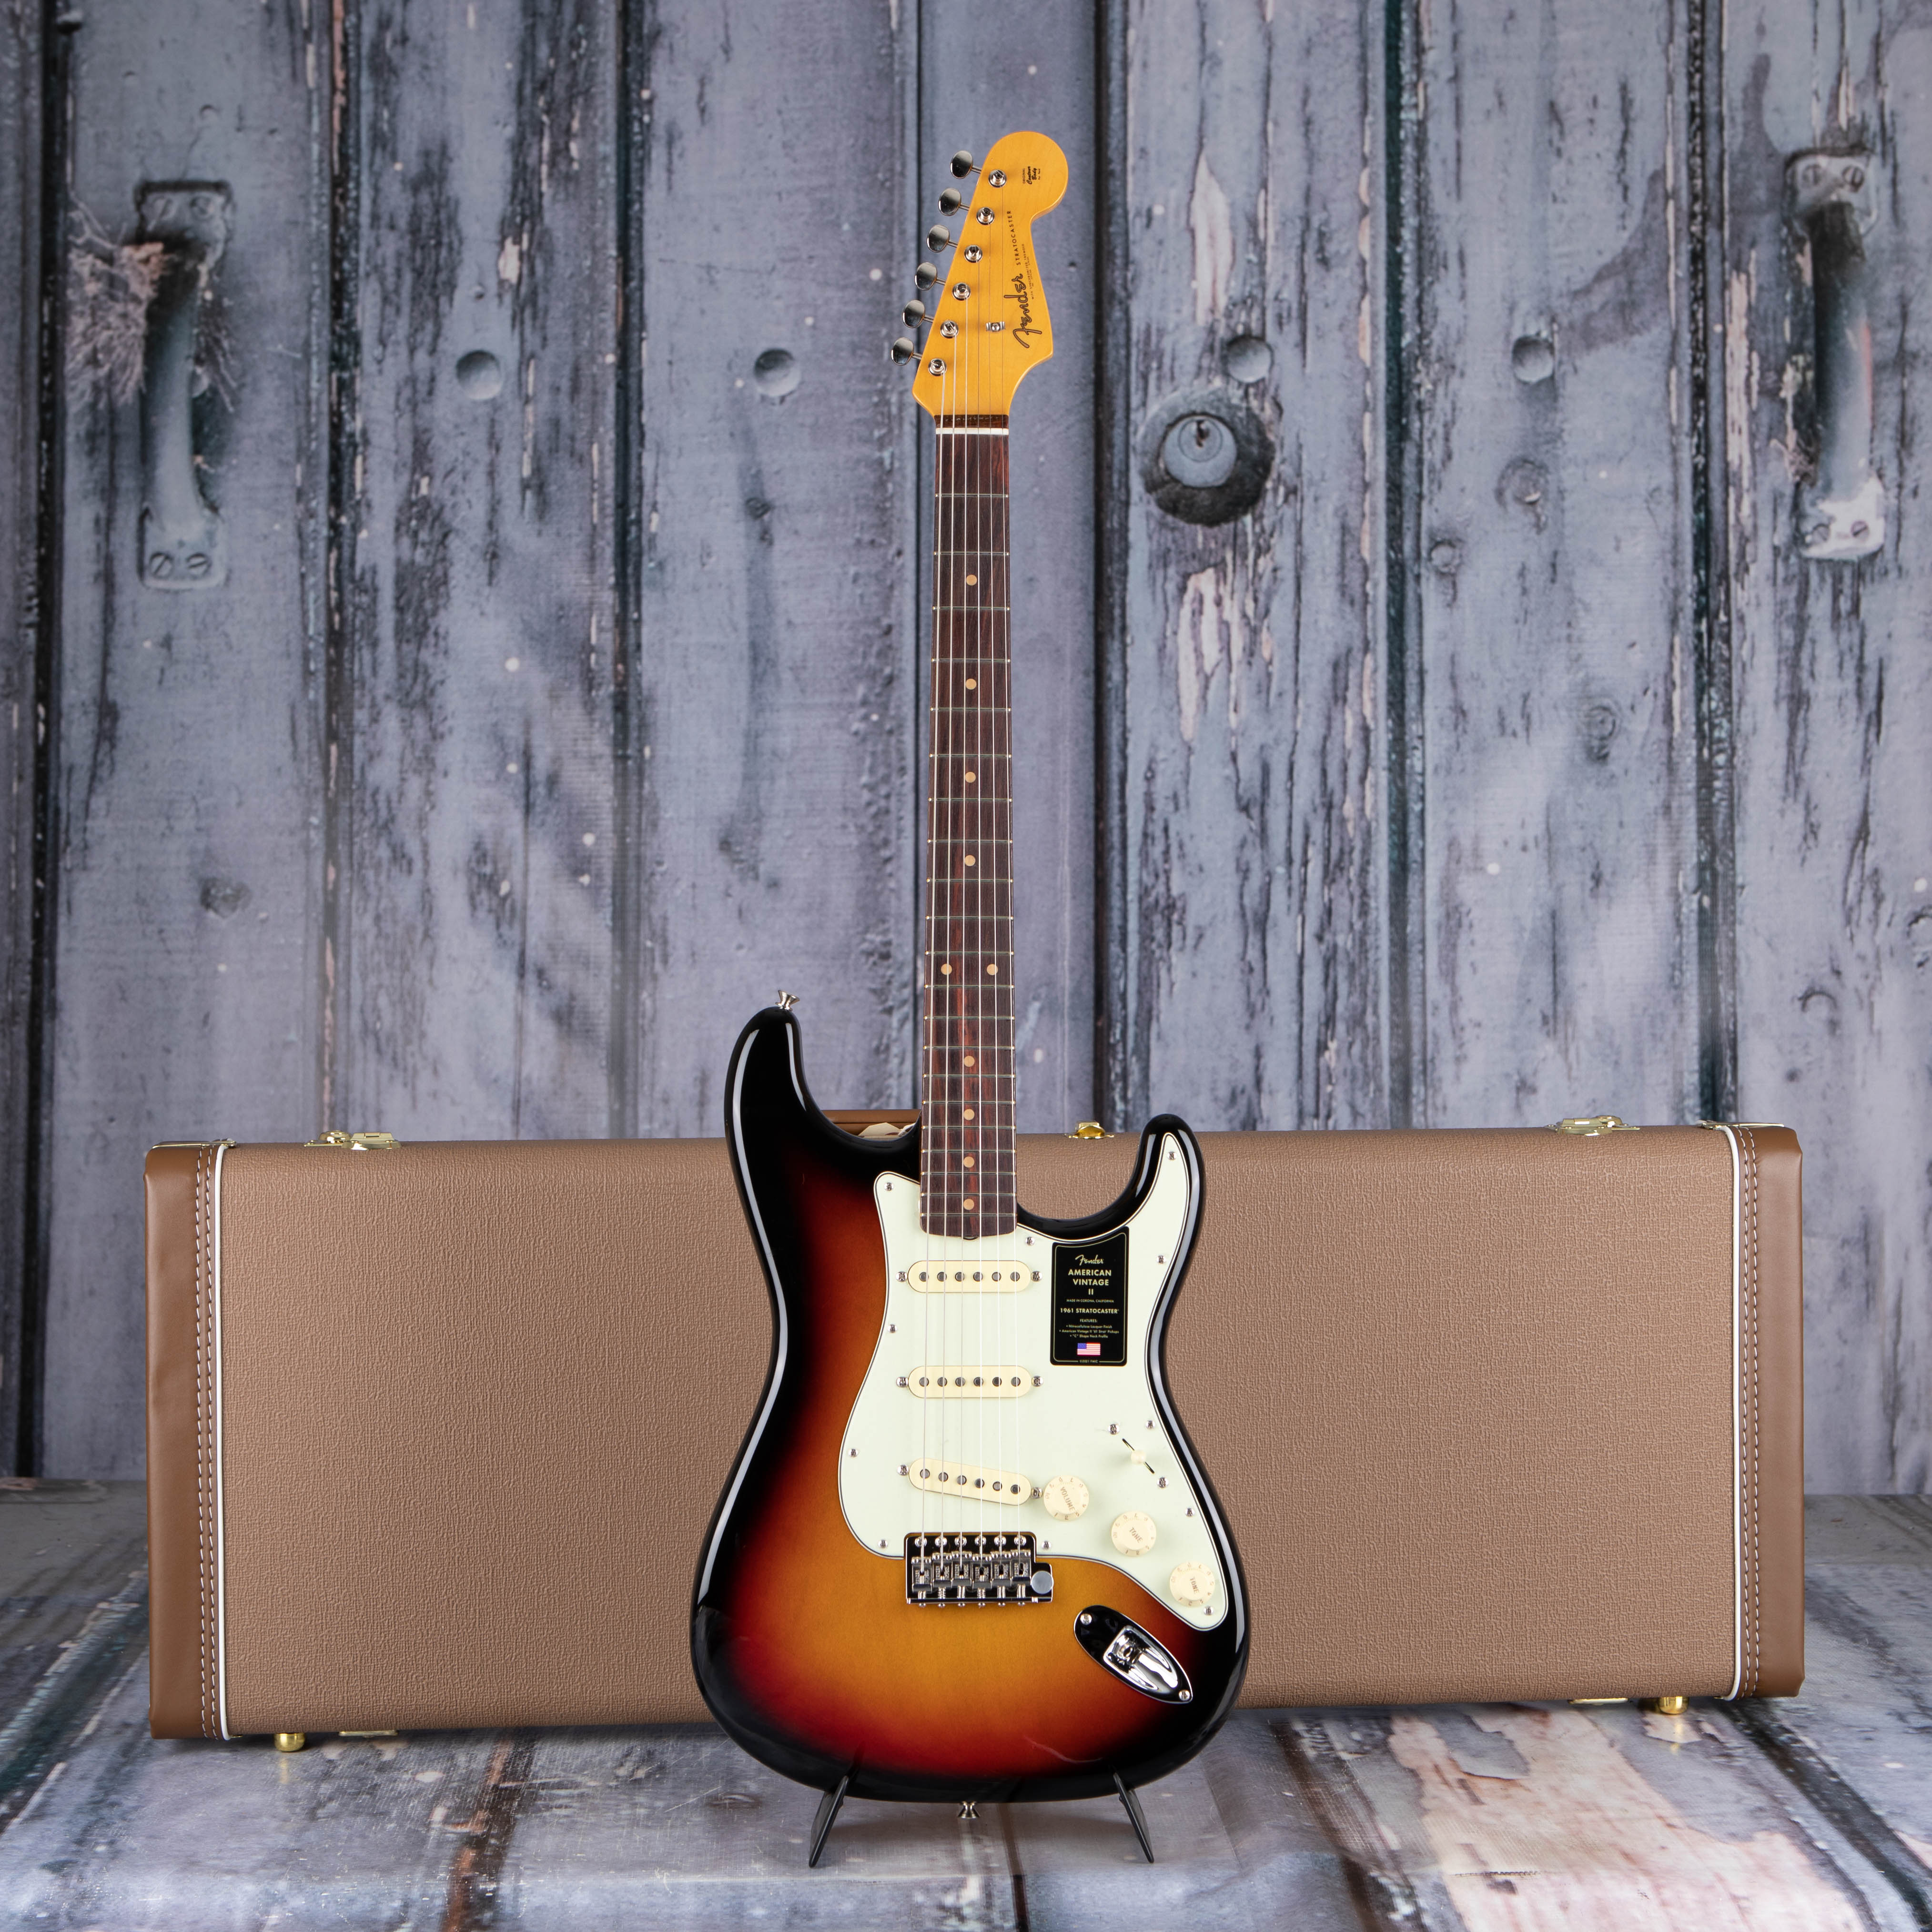 Fender American Vintage II 1961 Stratocaster Electric Guitar, 3-Color Sunburst, case